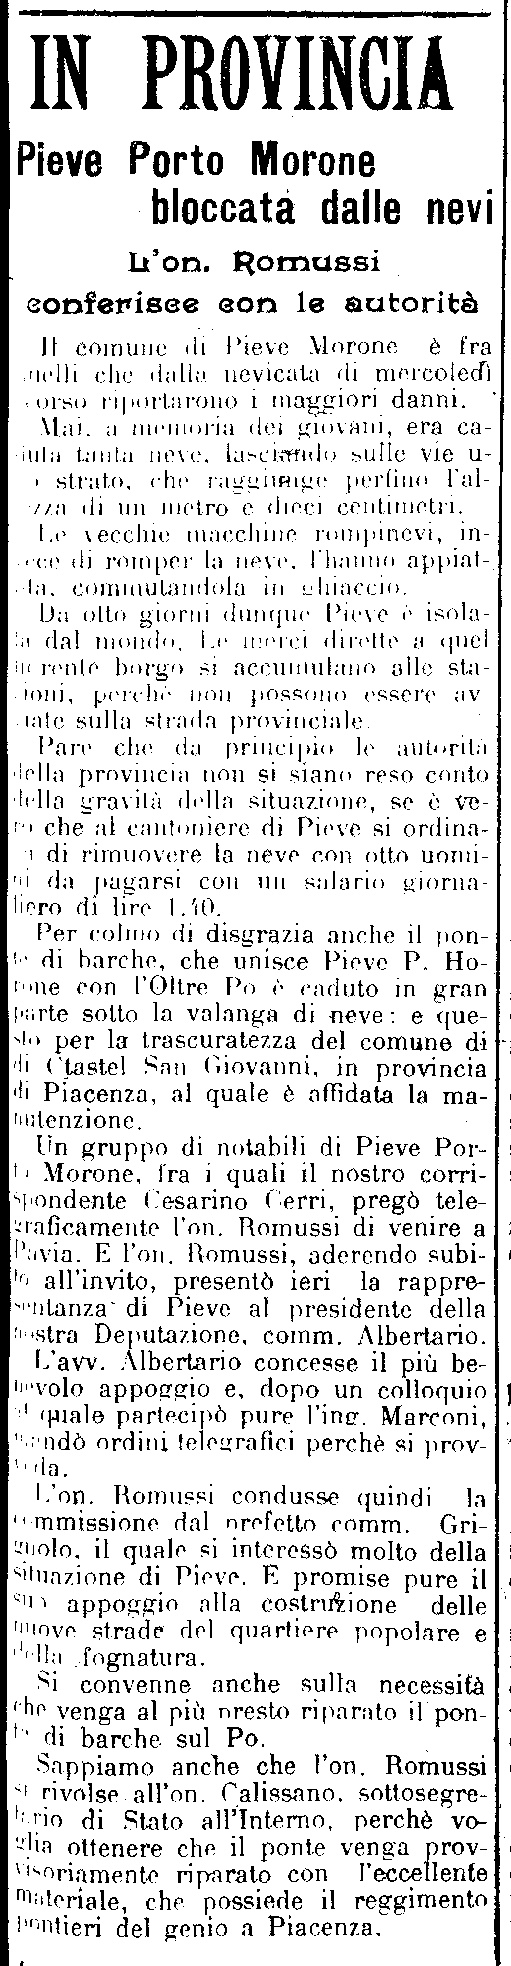 L'articolo de "La Provincia Pavese" del 10 Gennaio 1911